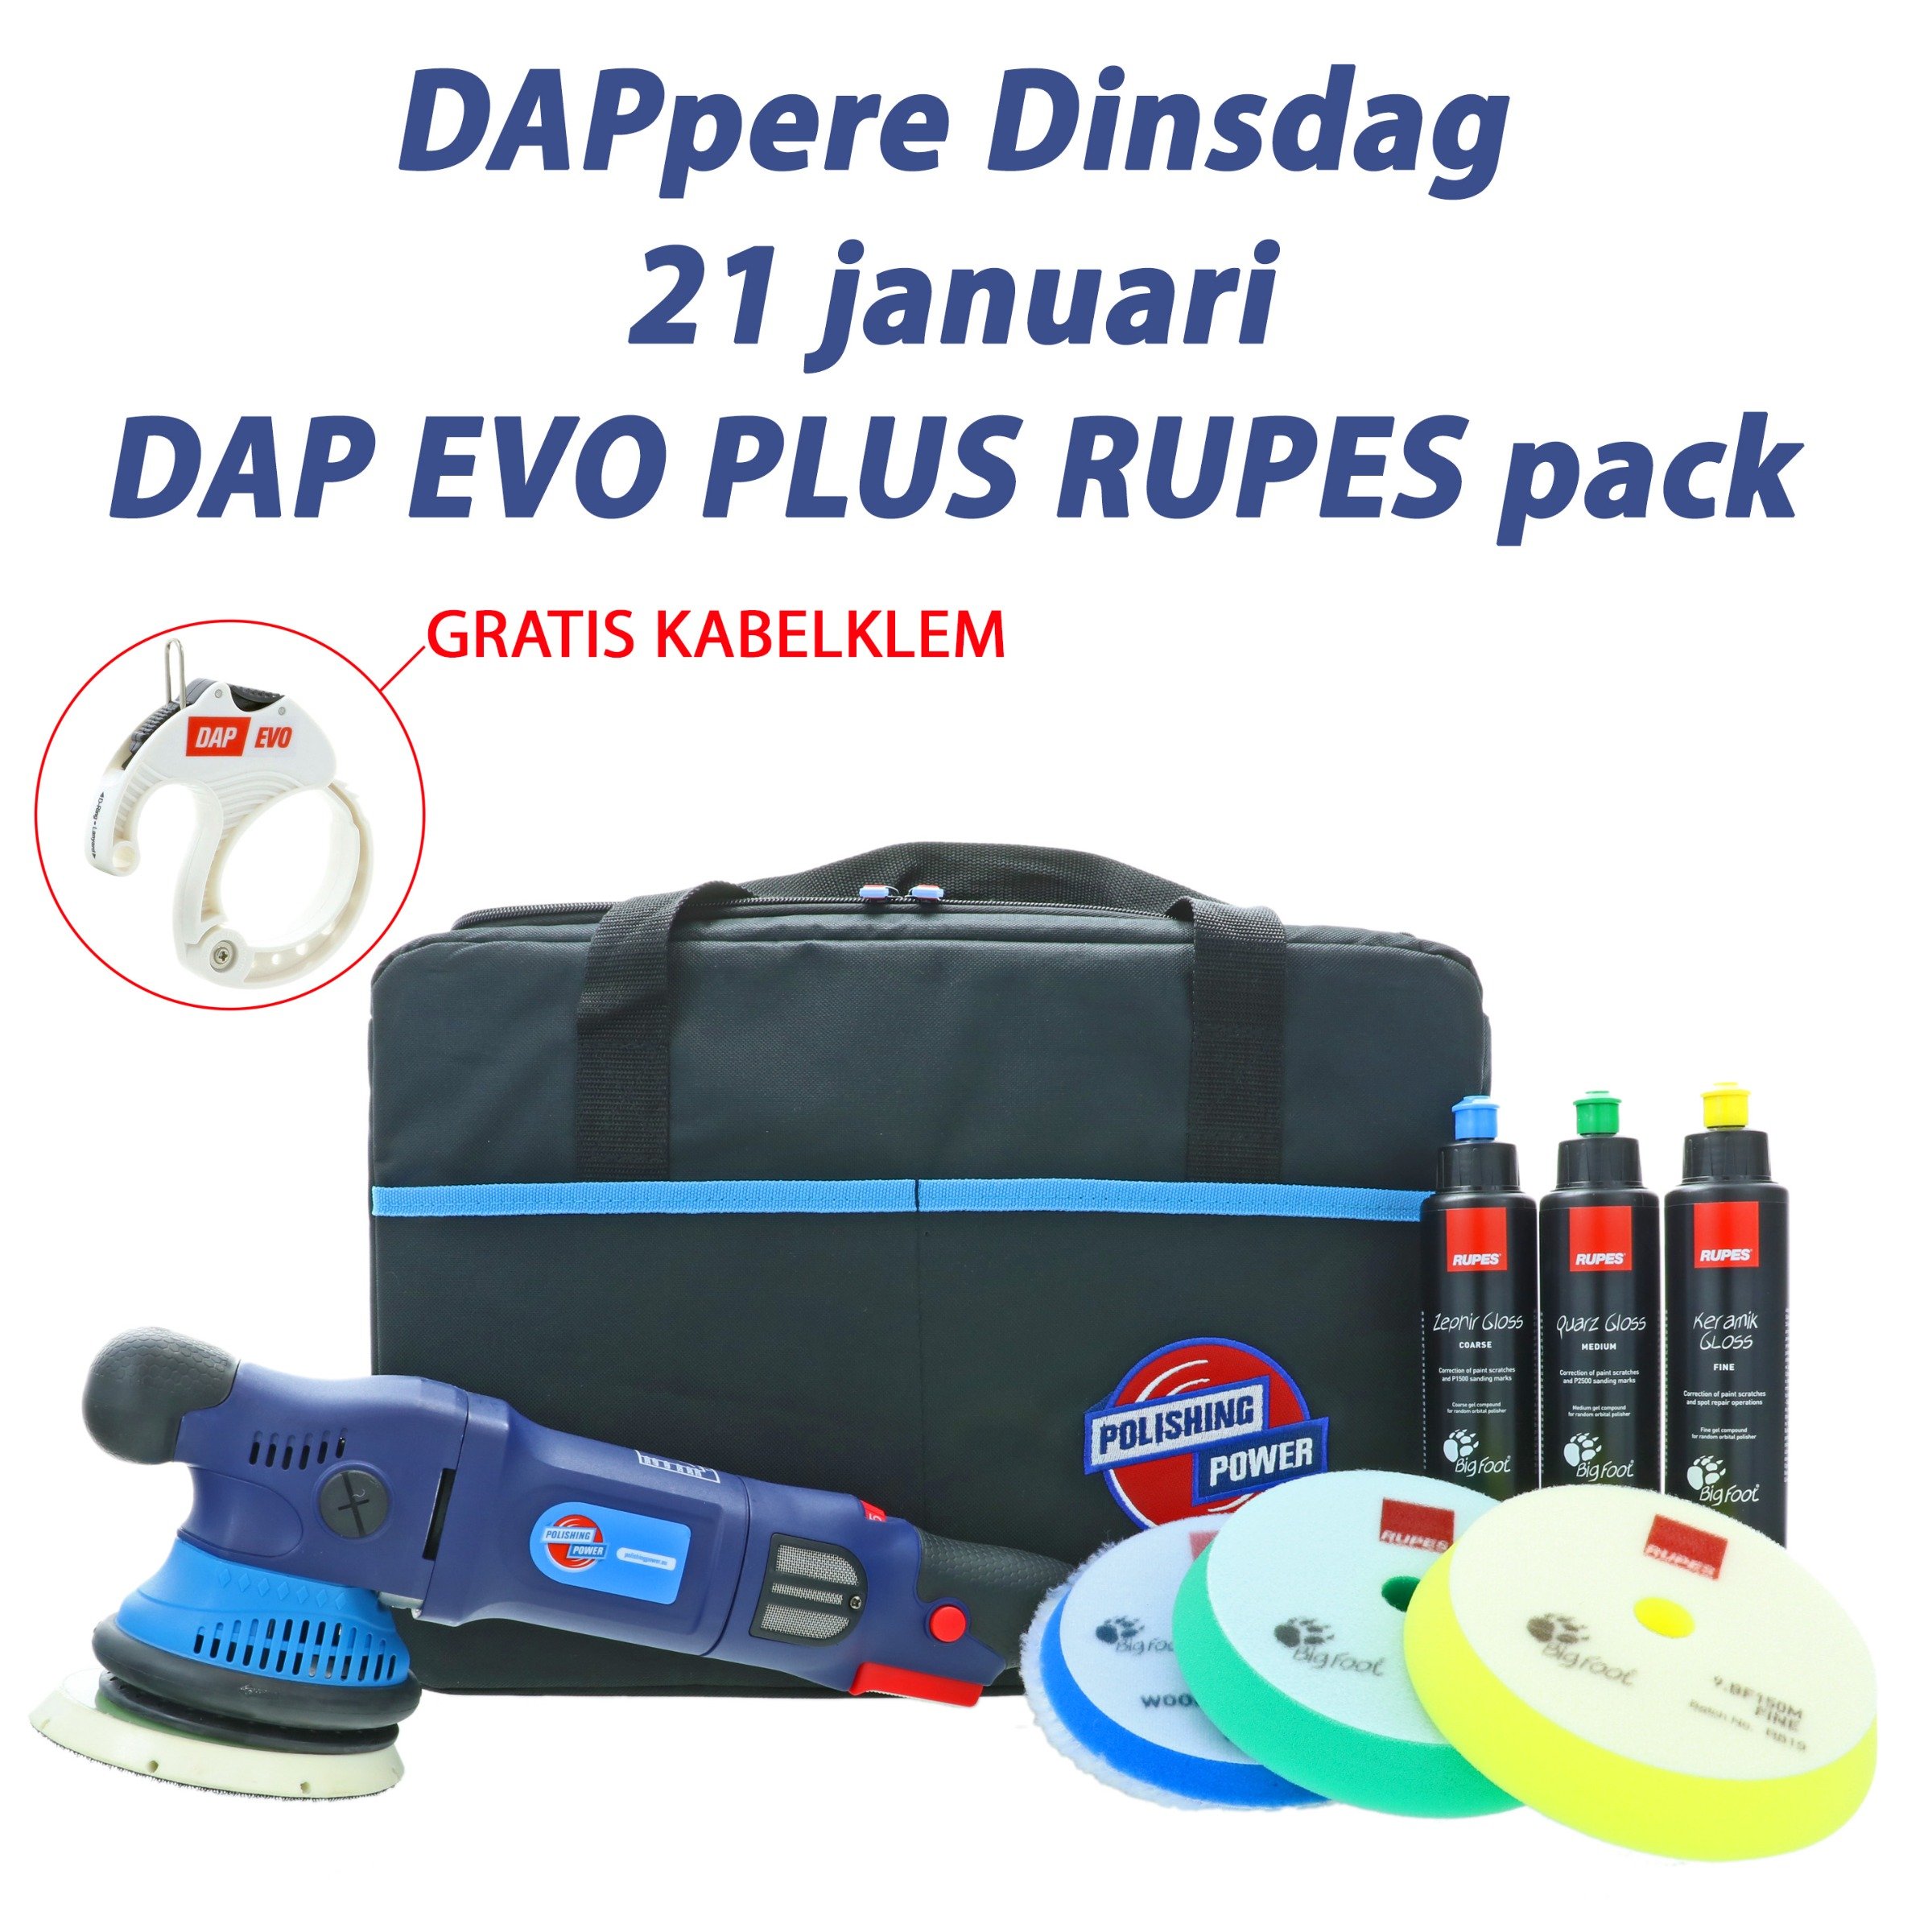 DAPpere Dinsdag DAP EVO PLUS Rupes pack